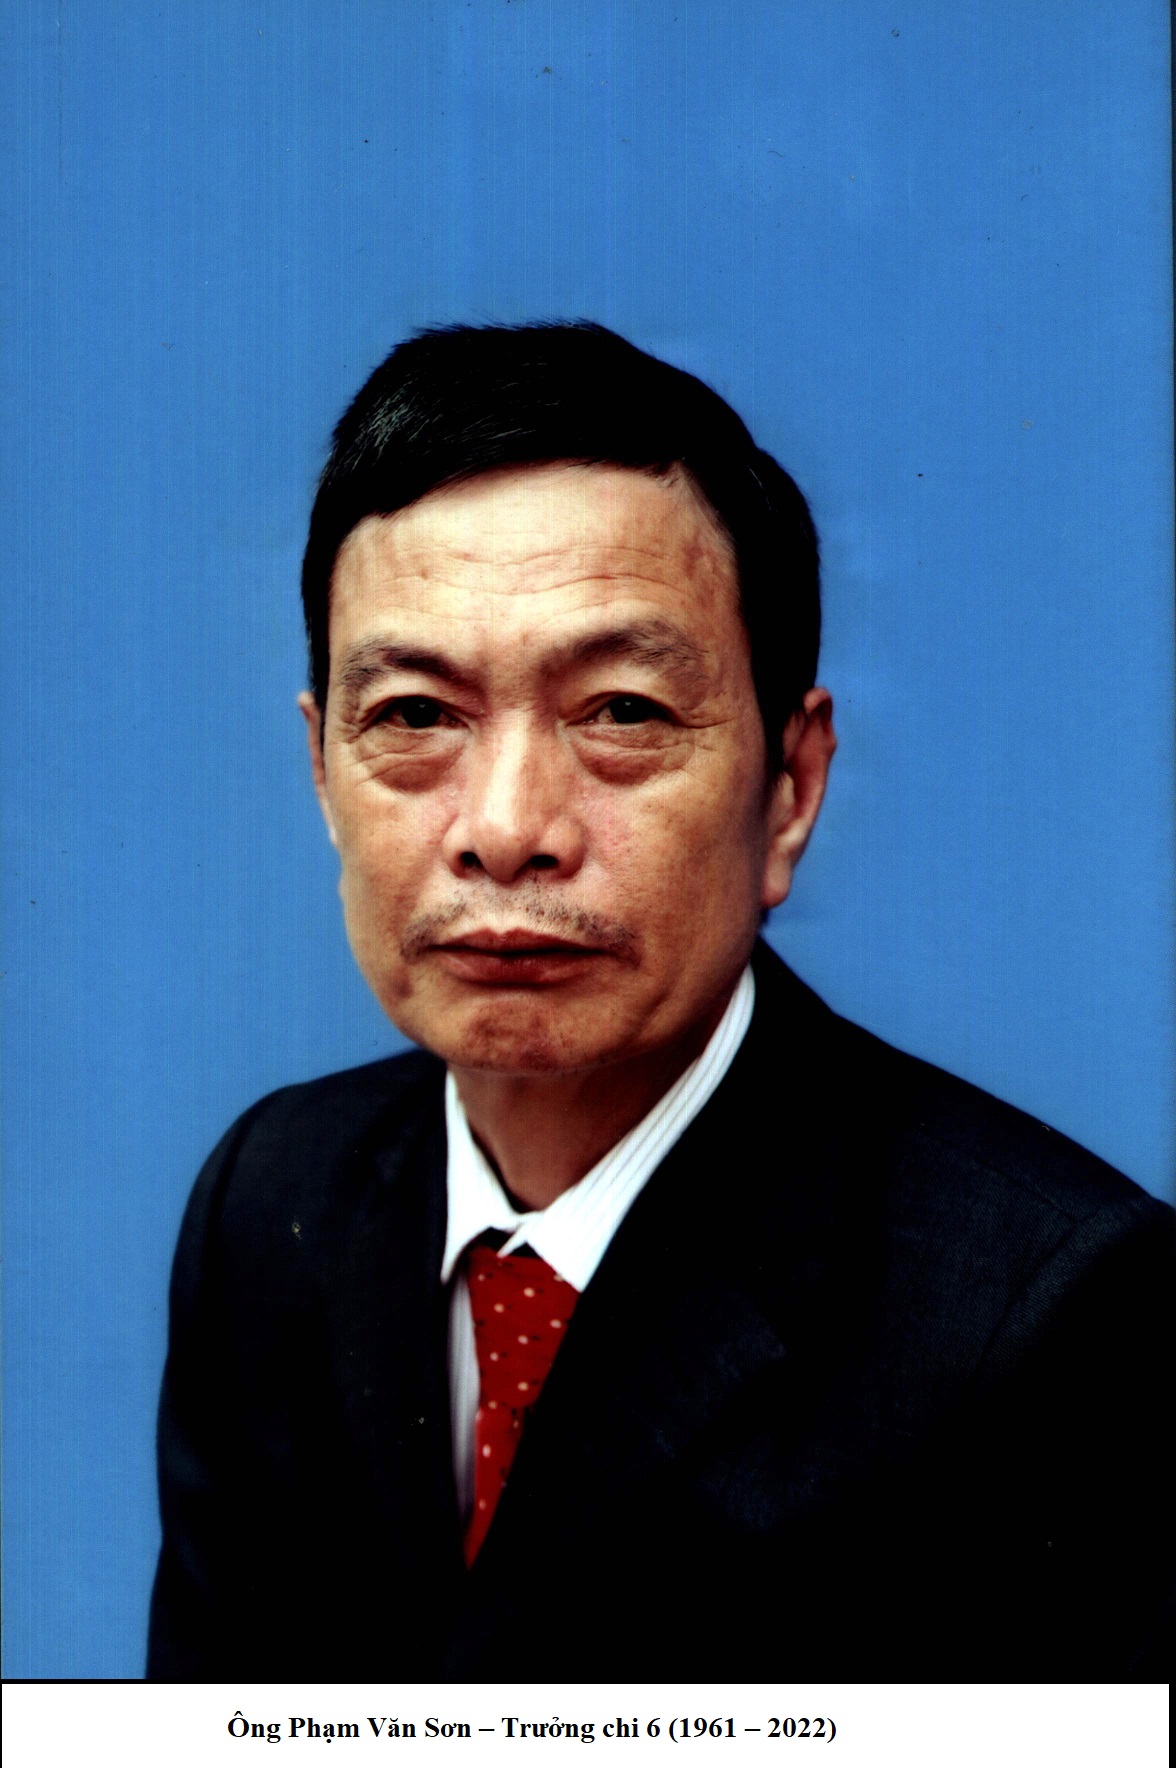 Ong Pham Van Son